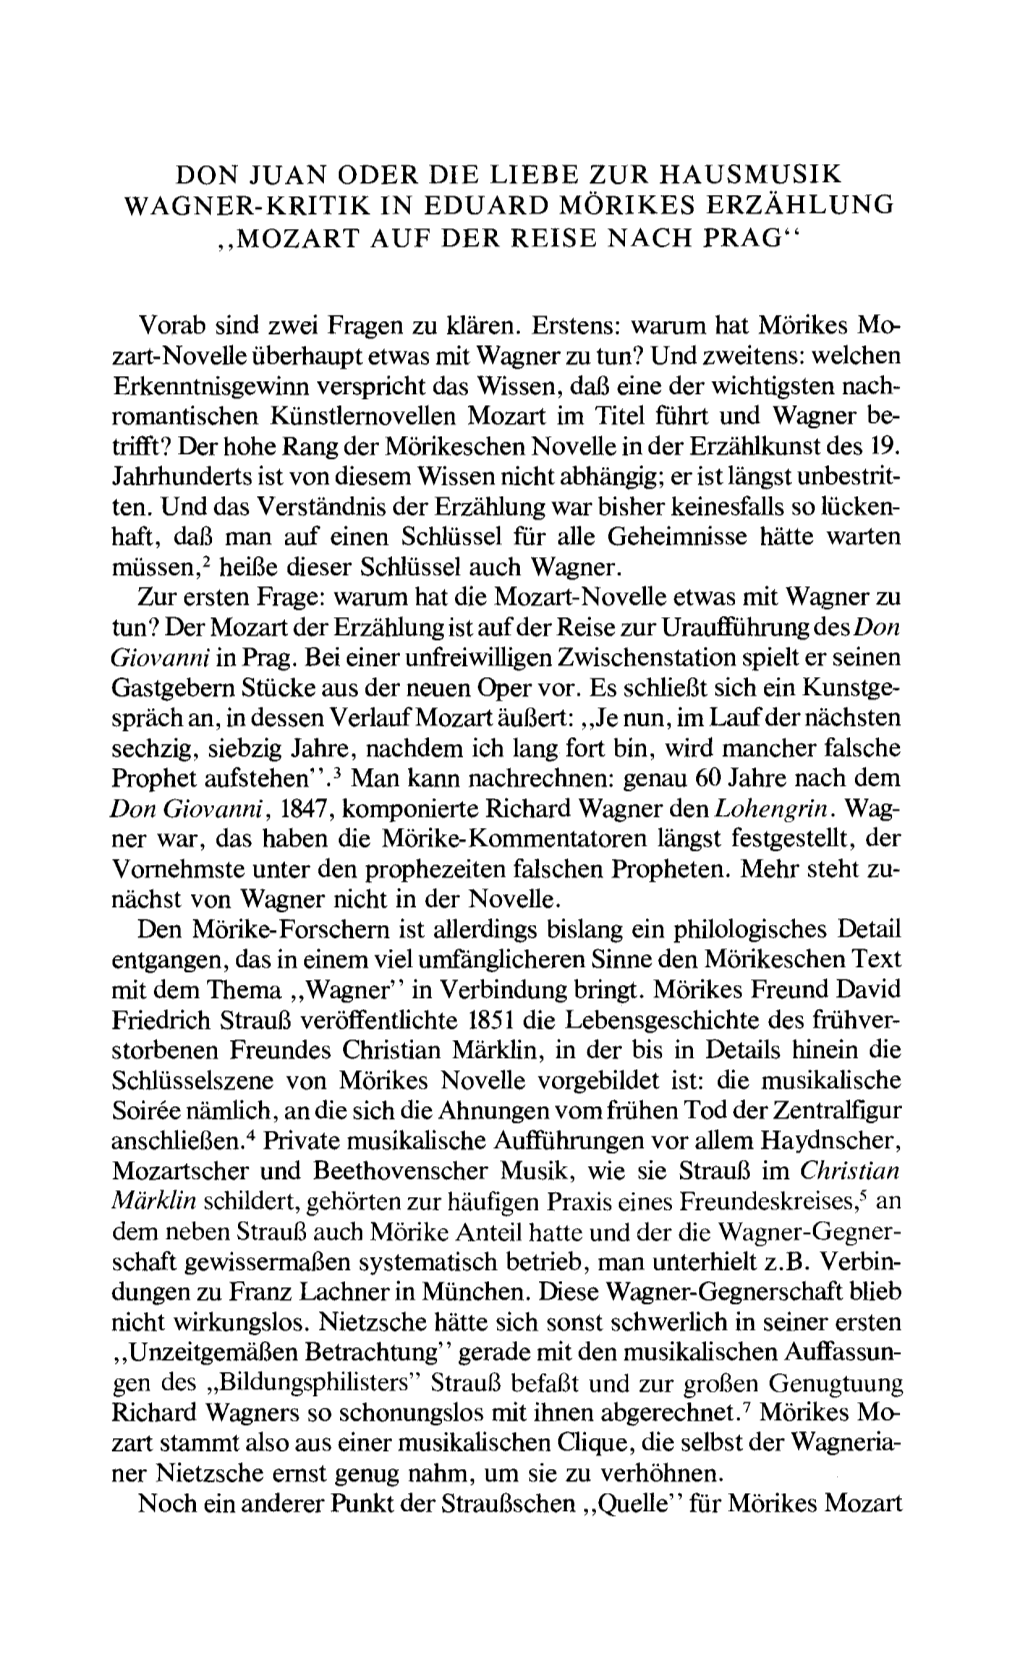 Don Juan Oder Die Liebe Zur Hausmusik Wagner-Kritik in Eduard Morikes Erzahlung ,,Mozart Auf Der Reise Nach Prag"